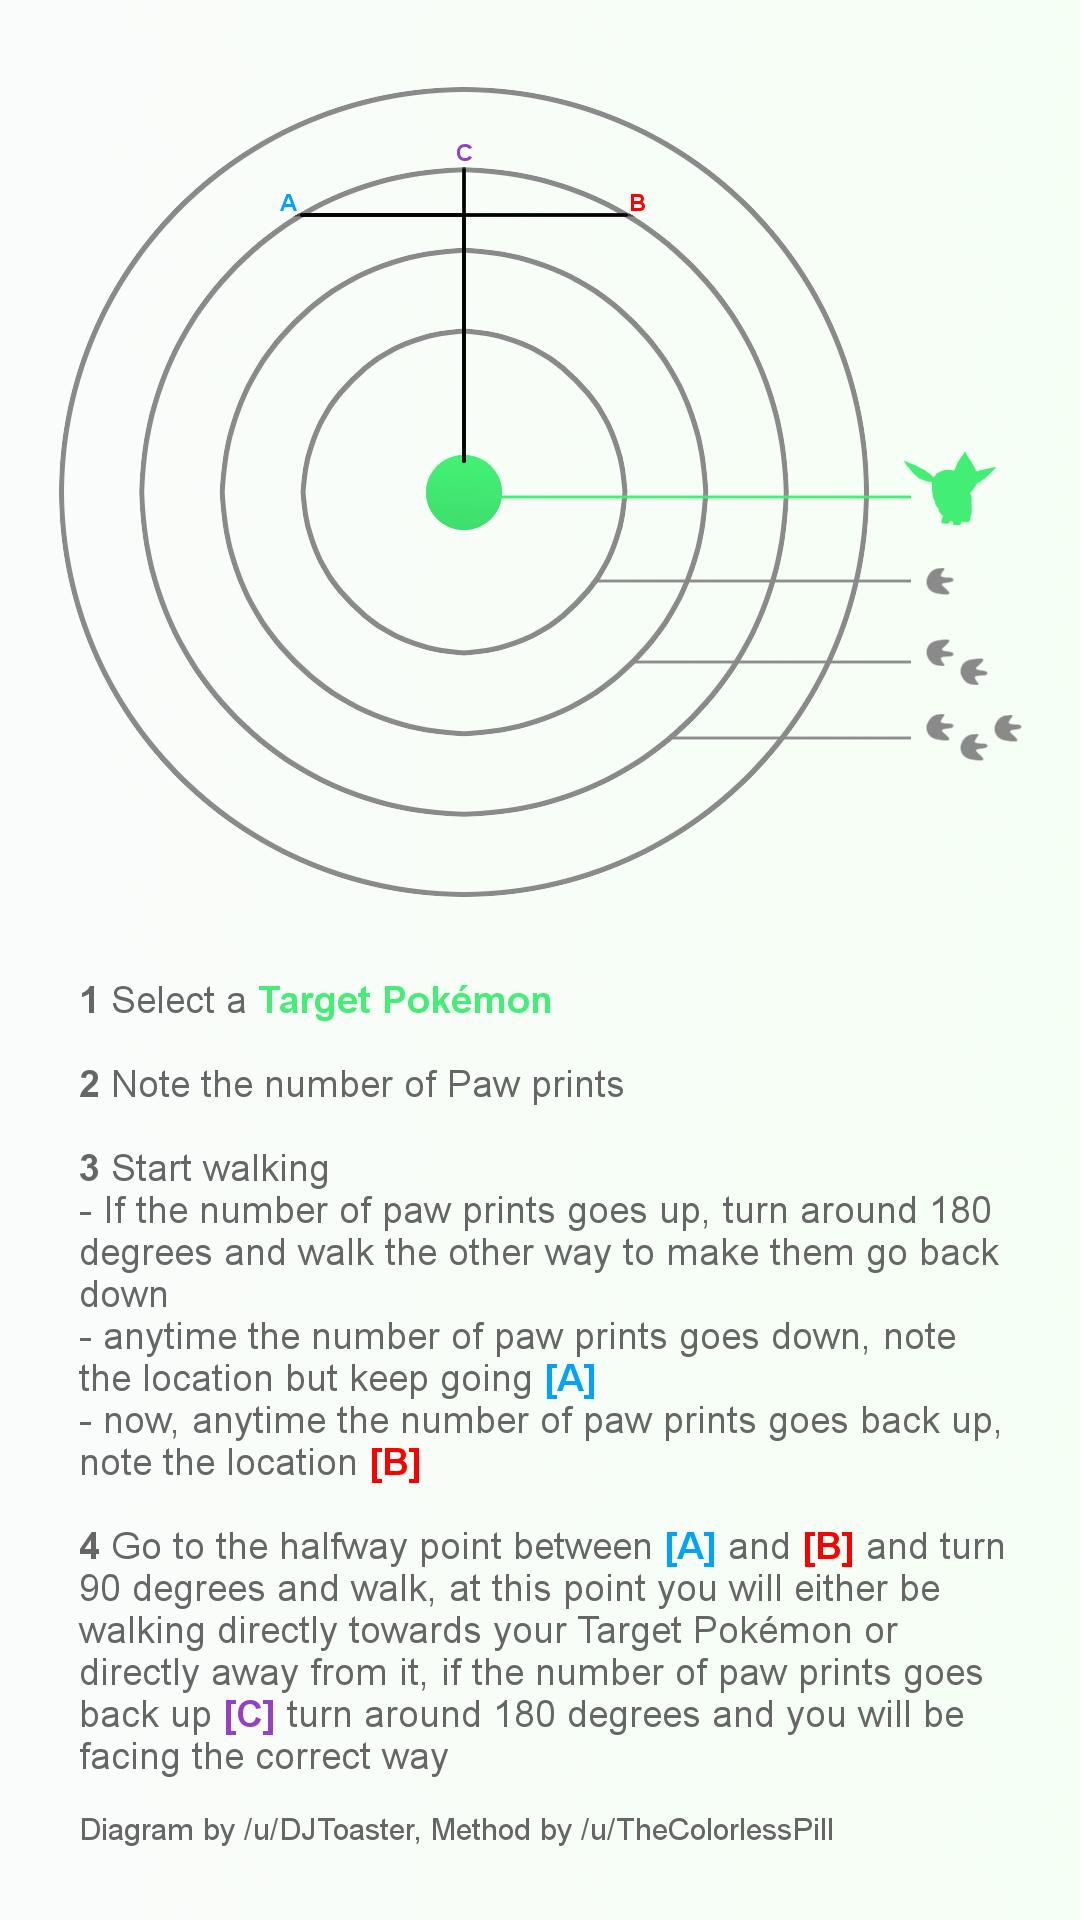 How to catch a Pokémon in Pokémon Go